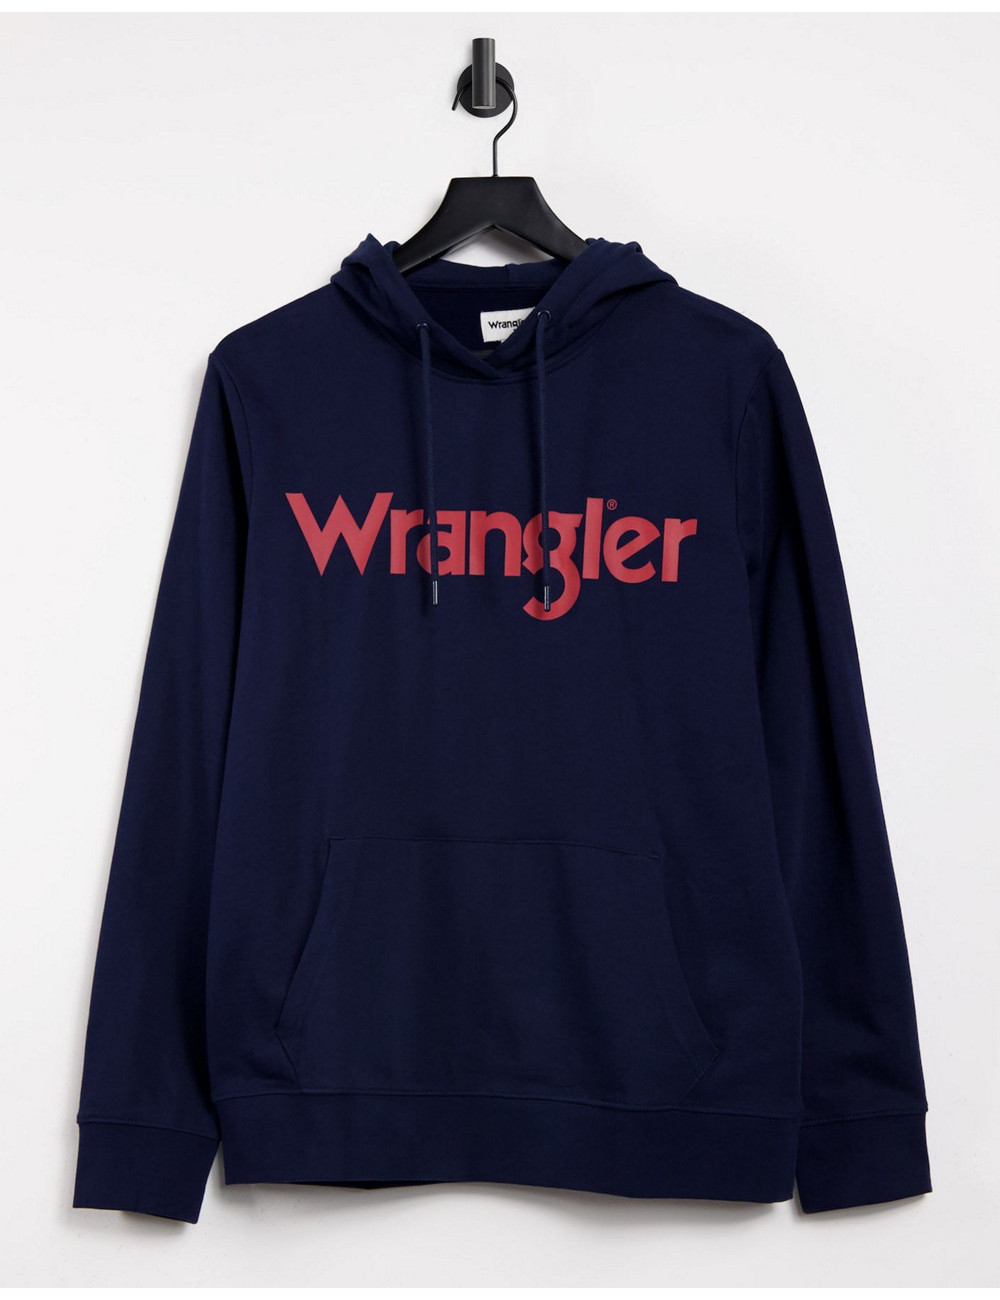 Wrangler logo hoody